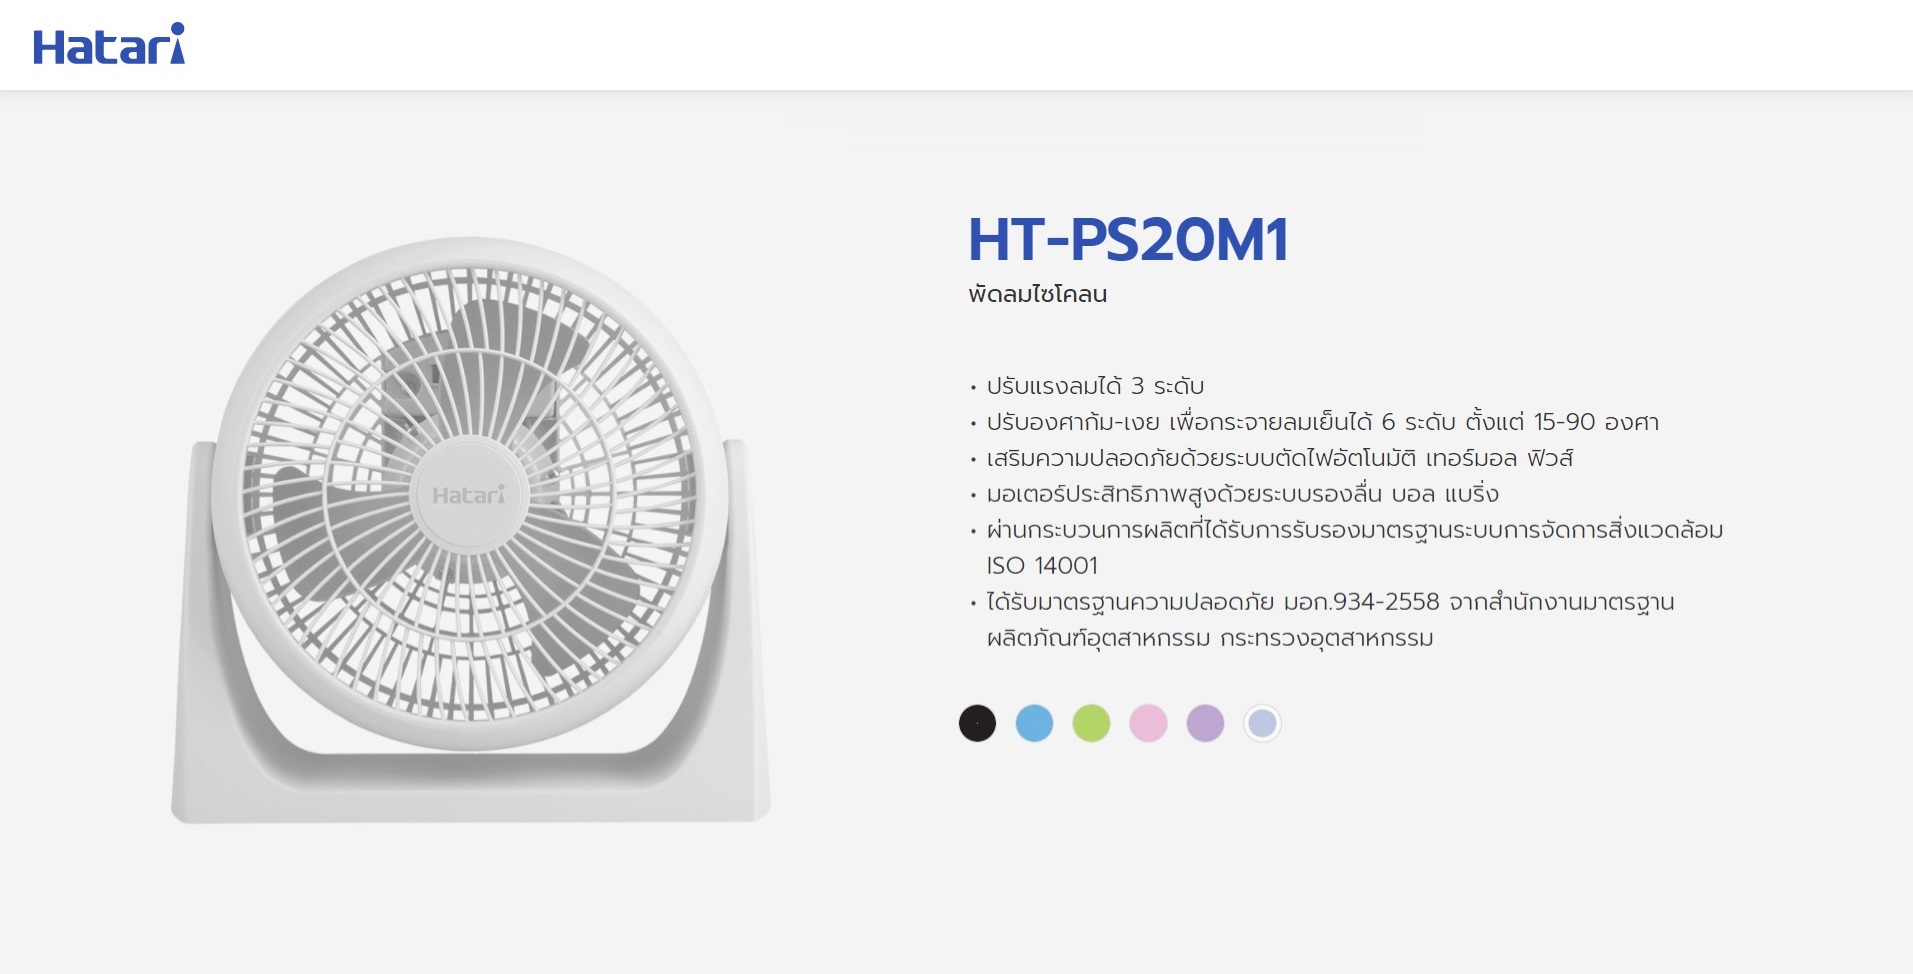 คำอธิบายเพิ่มเติมเกี่ยวกับ Hatari พัดลมตั้งโต๊ะ 8 นิ้ว รุ่น HT-PS20M1 (สีขาว)